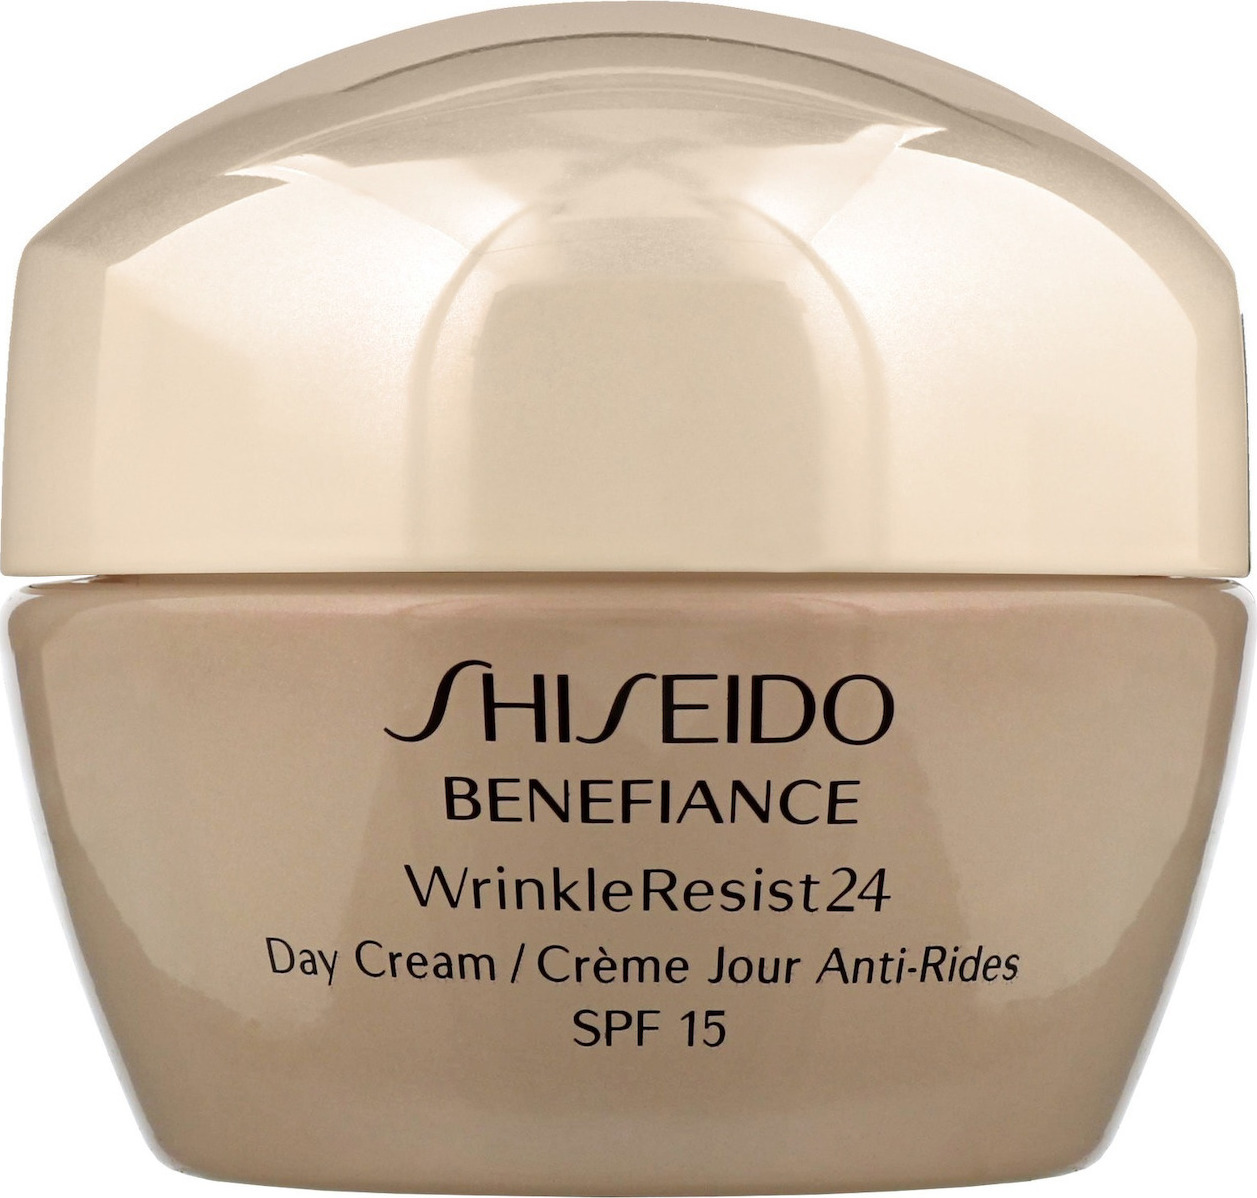 Shiseido benefiance wrinkle. Крем Shiseido Benefiance wrinkleresist24 Night 50 мл. Shiseido Benefiance Wrinkle resist 24. Shiseido Benefiance wrinkleresist24 Day Cream. Крем Shiseido Benefiance wrinkleresist24 Intensive Eye Contour 15 мл.